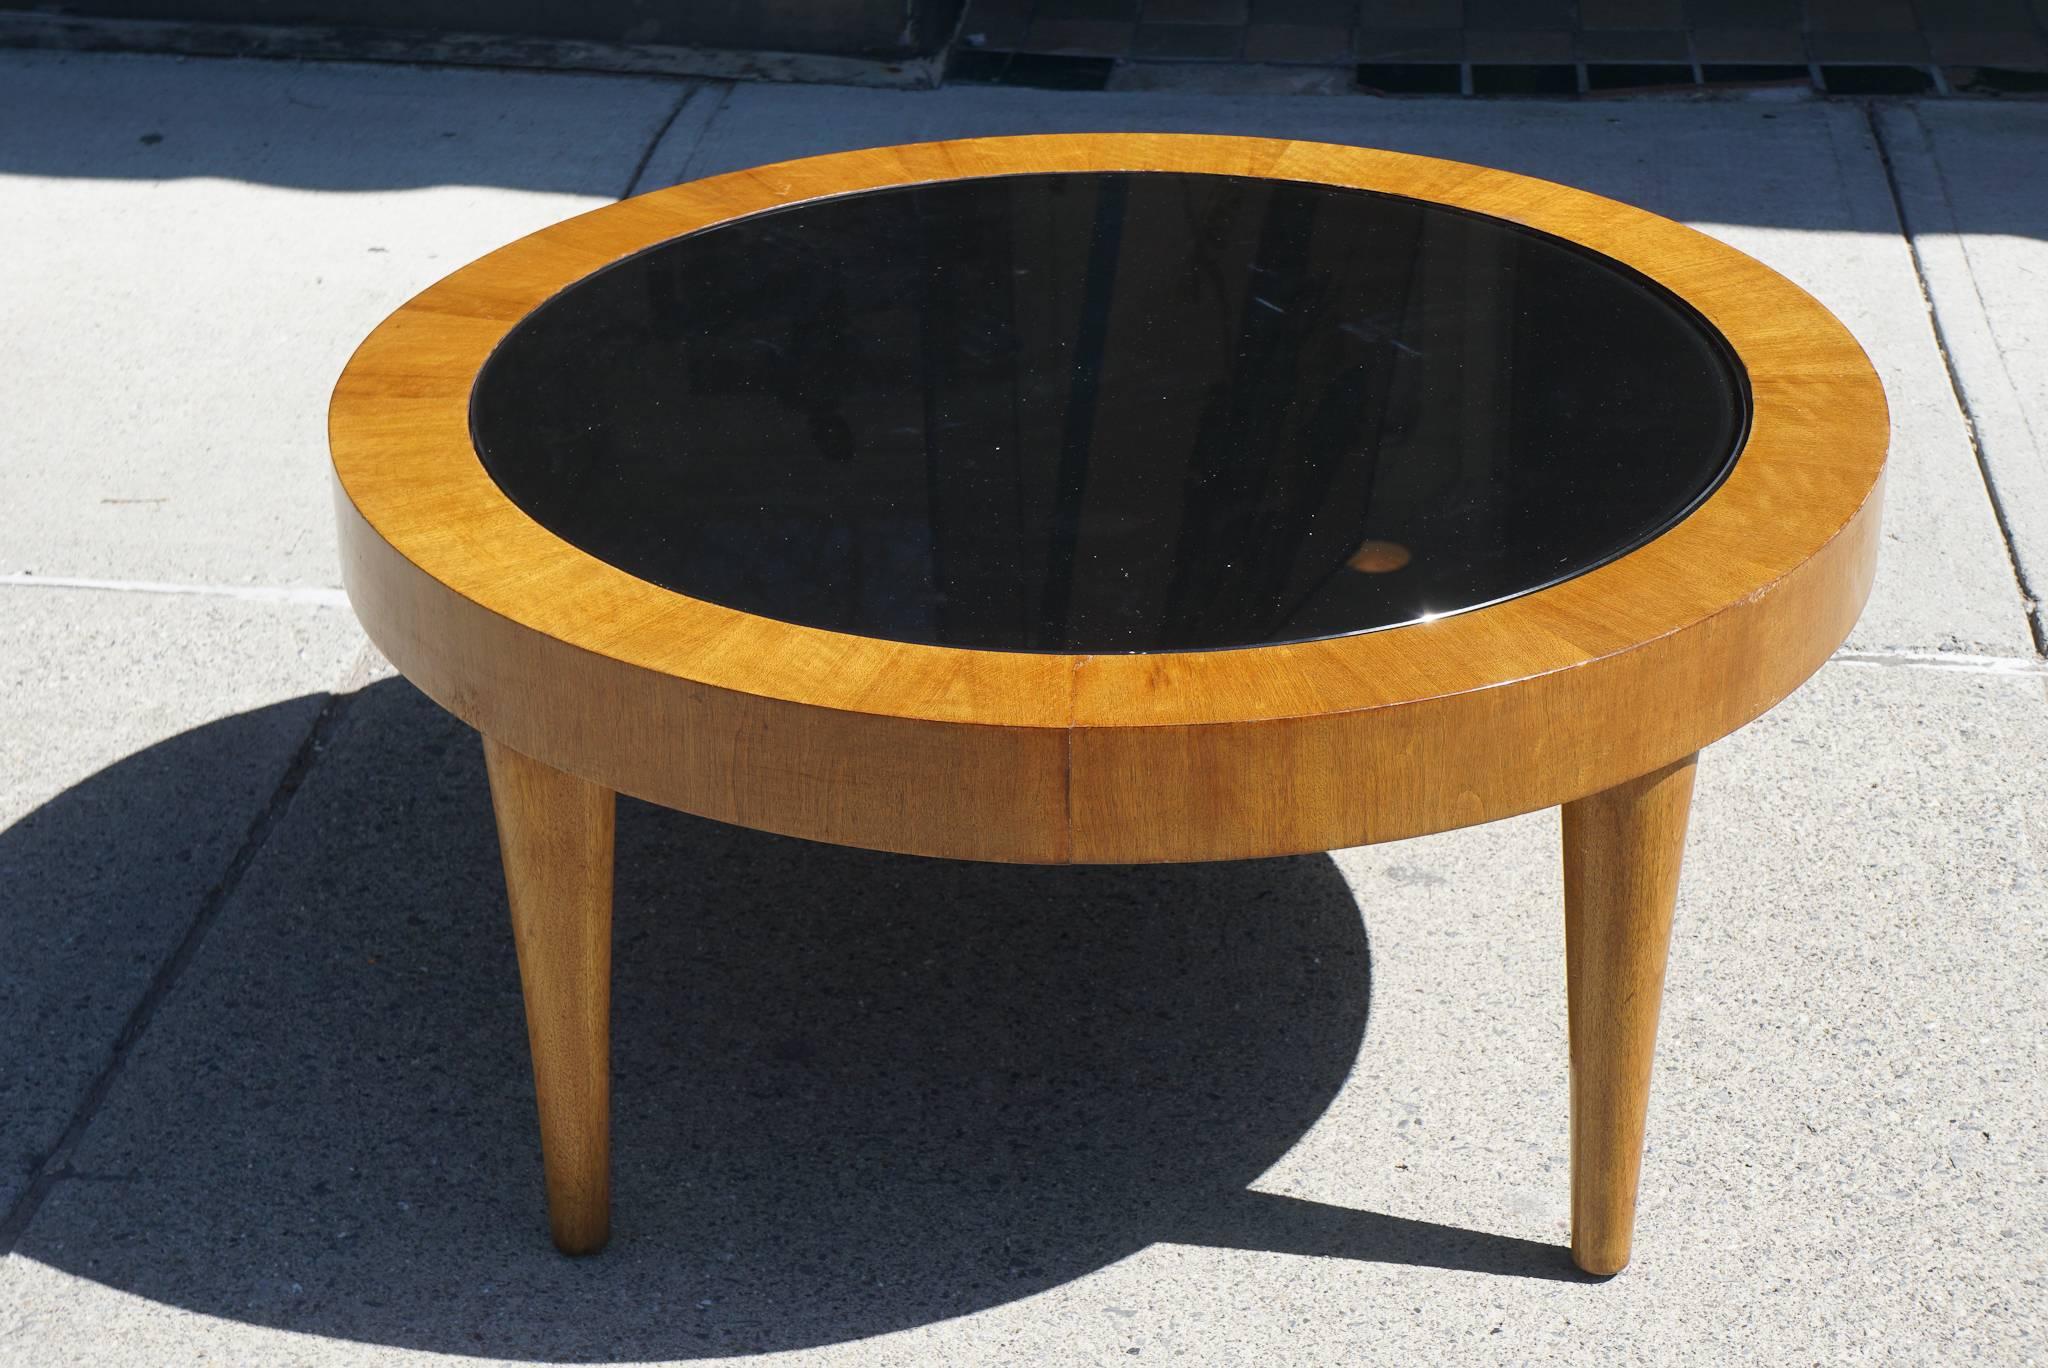 Cette table basse moderne vintage des années 1940 en noyer est centrée sur un plateau en verre noir, créant un jeu dynamique de contrastes clairs et foncés. Les grains du bois sont bien choisis pour épouser la forme de la table et créer un jeu de